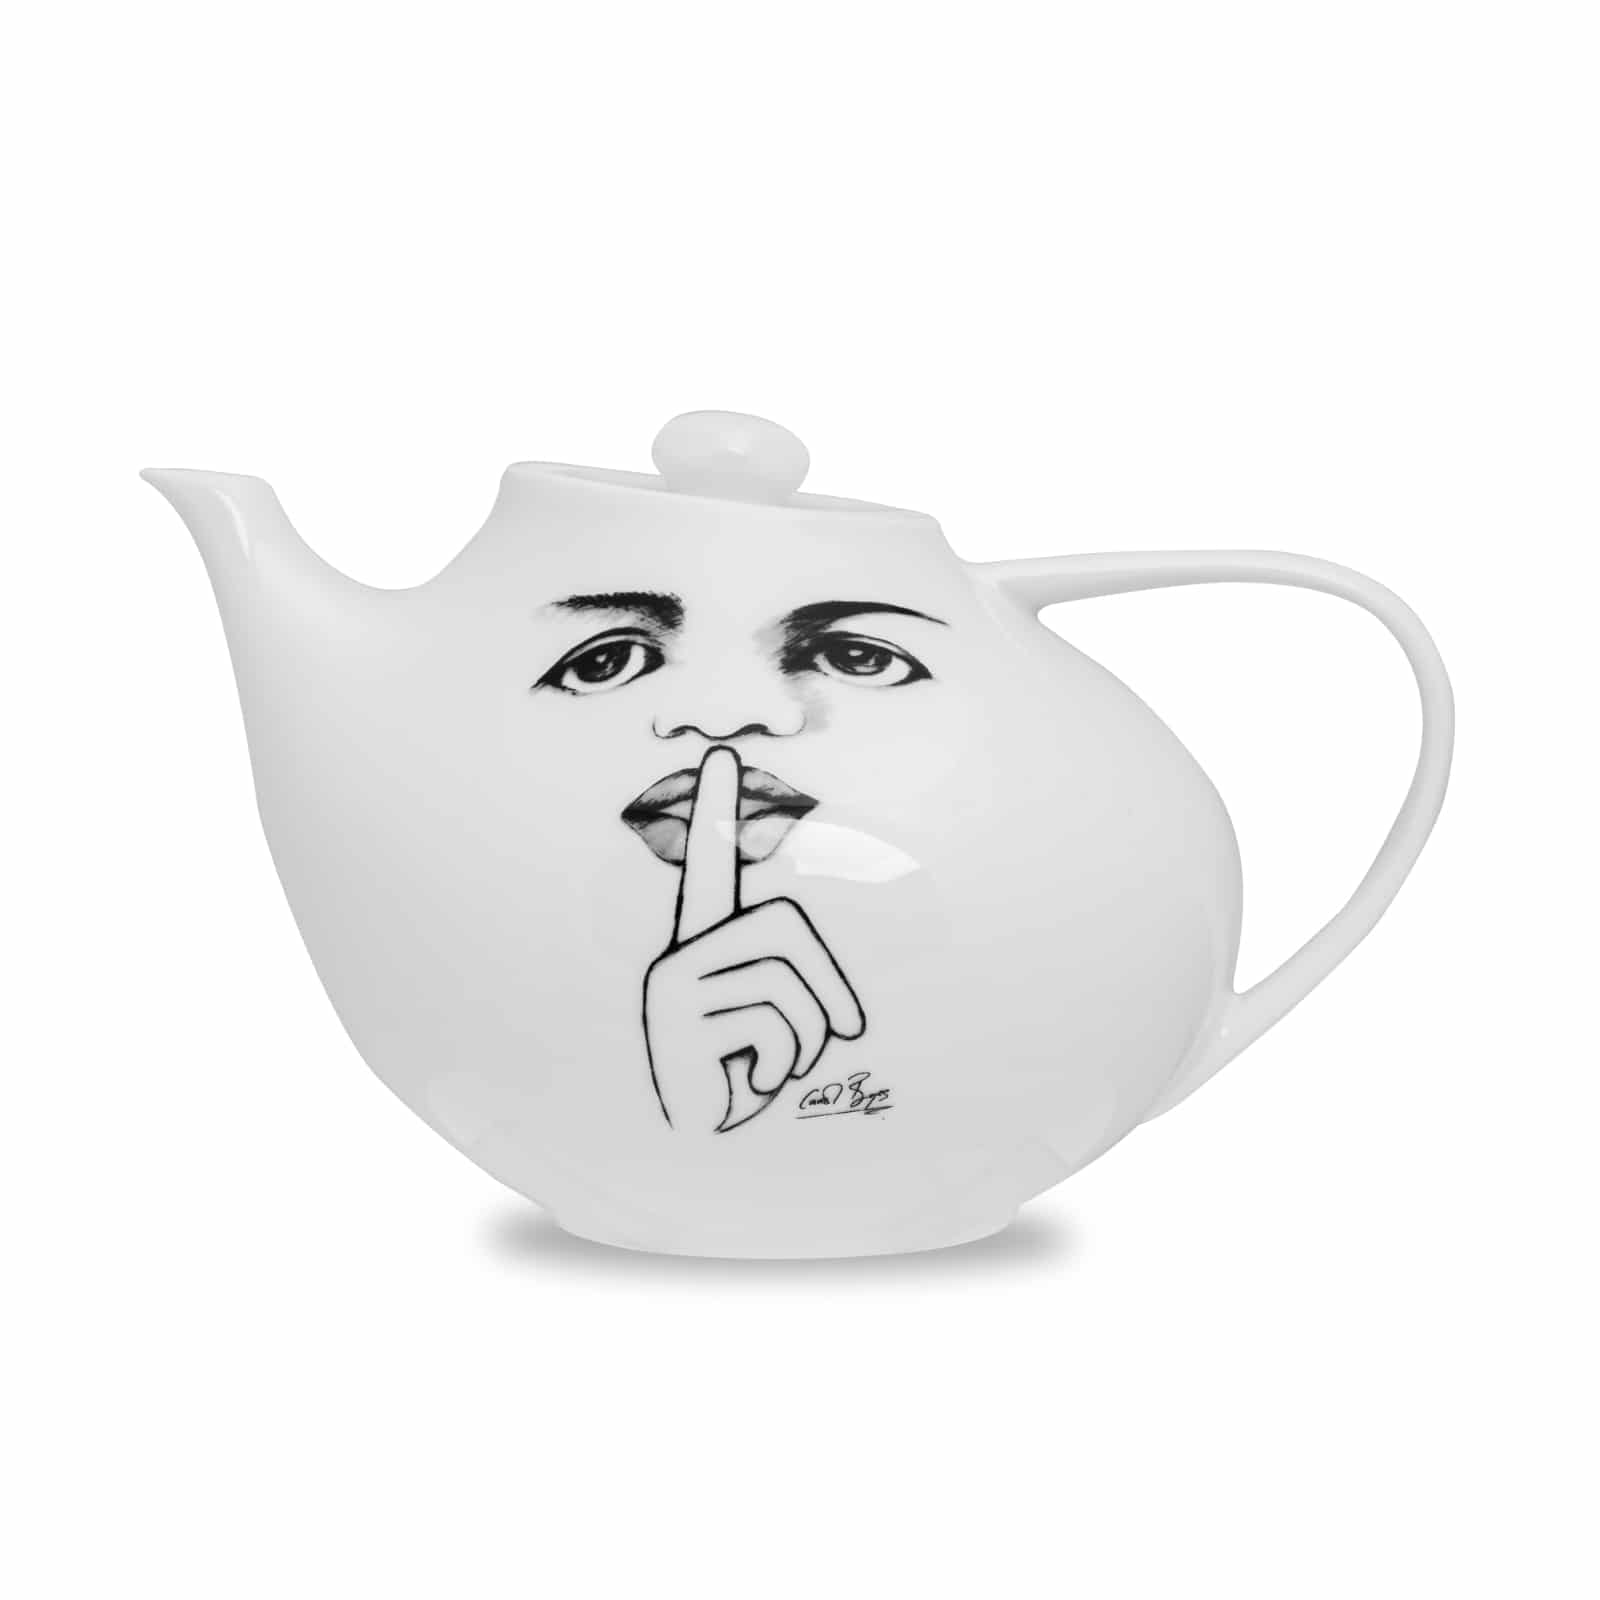 Carrol Boyes Tea Pot It's A secret